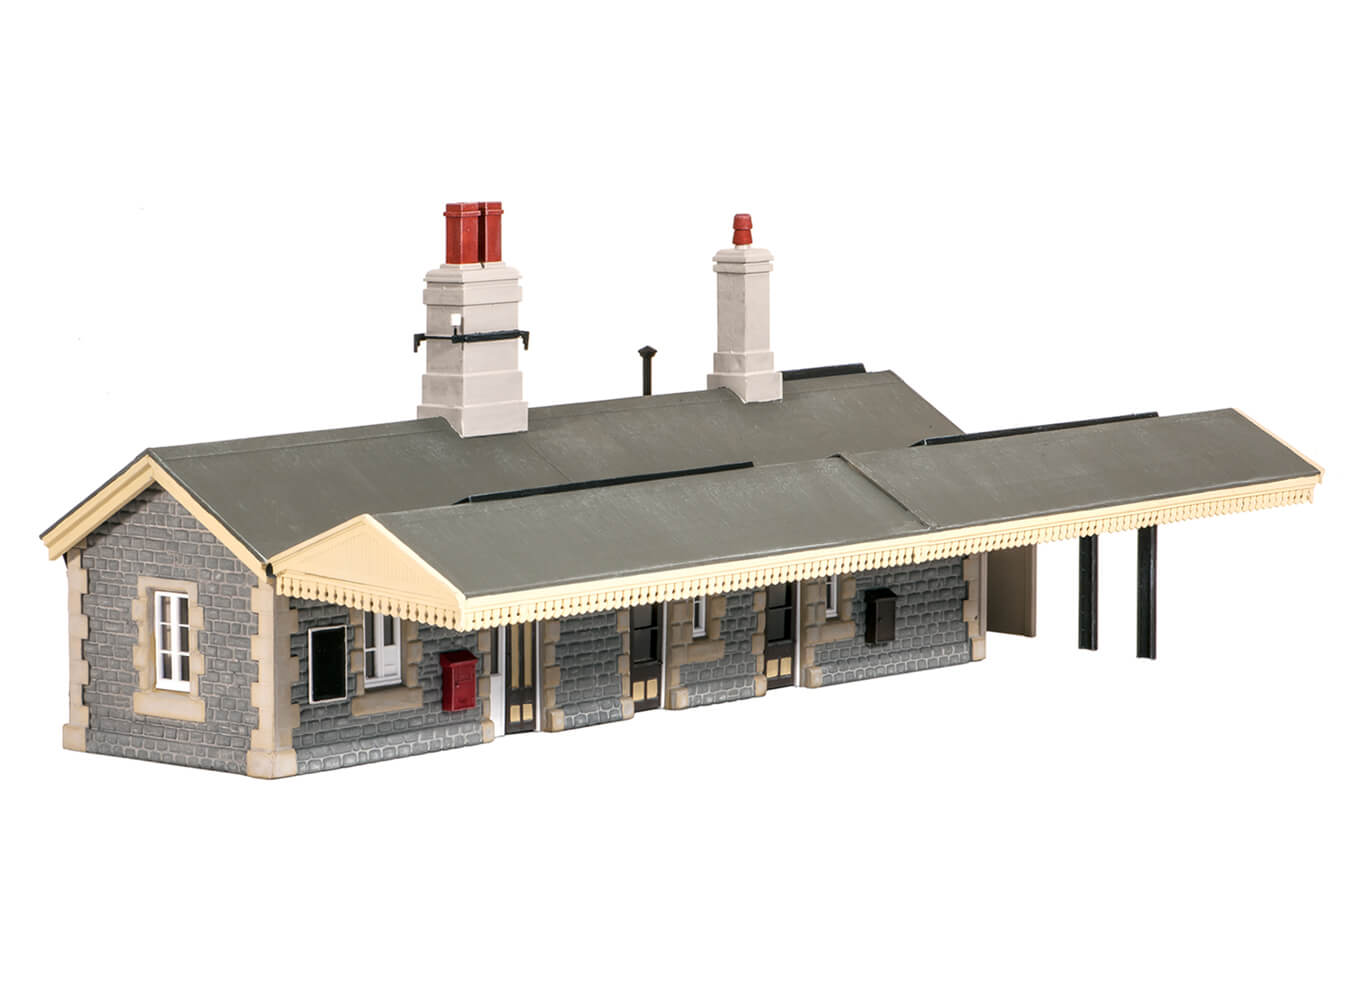 oo gauge model railway buildings